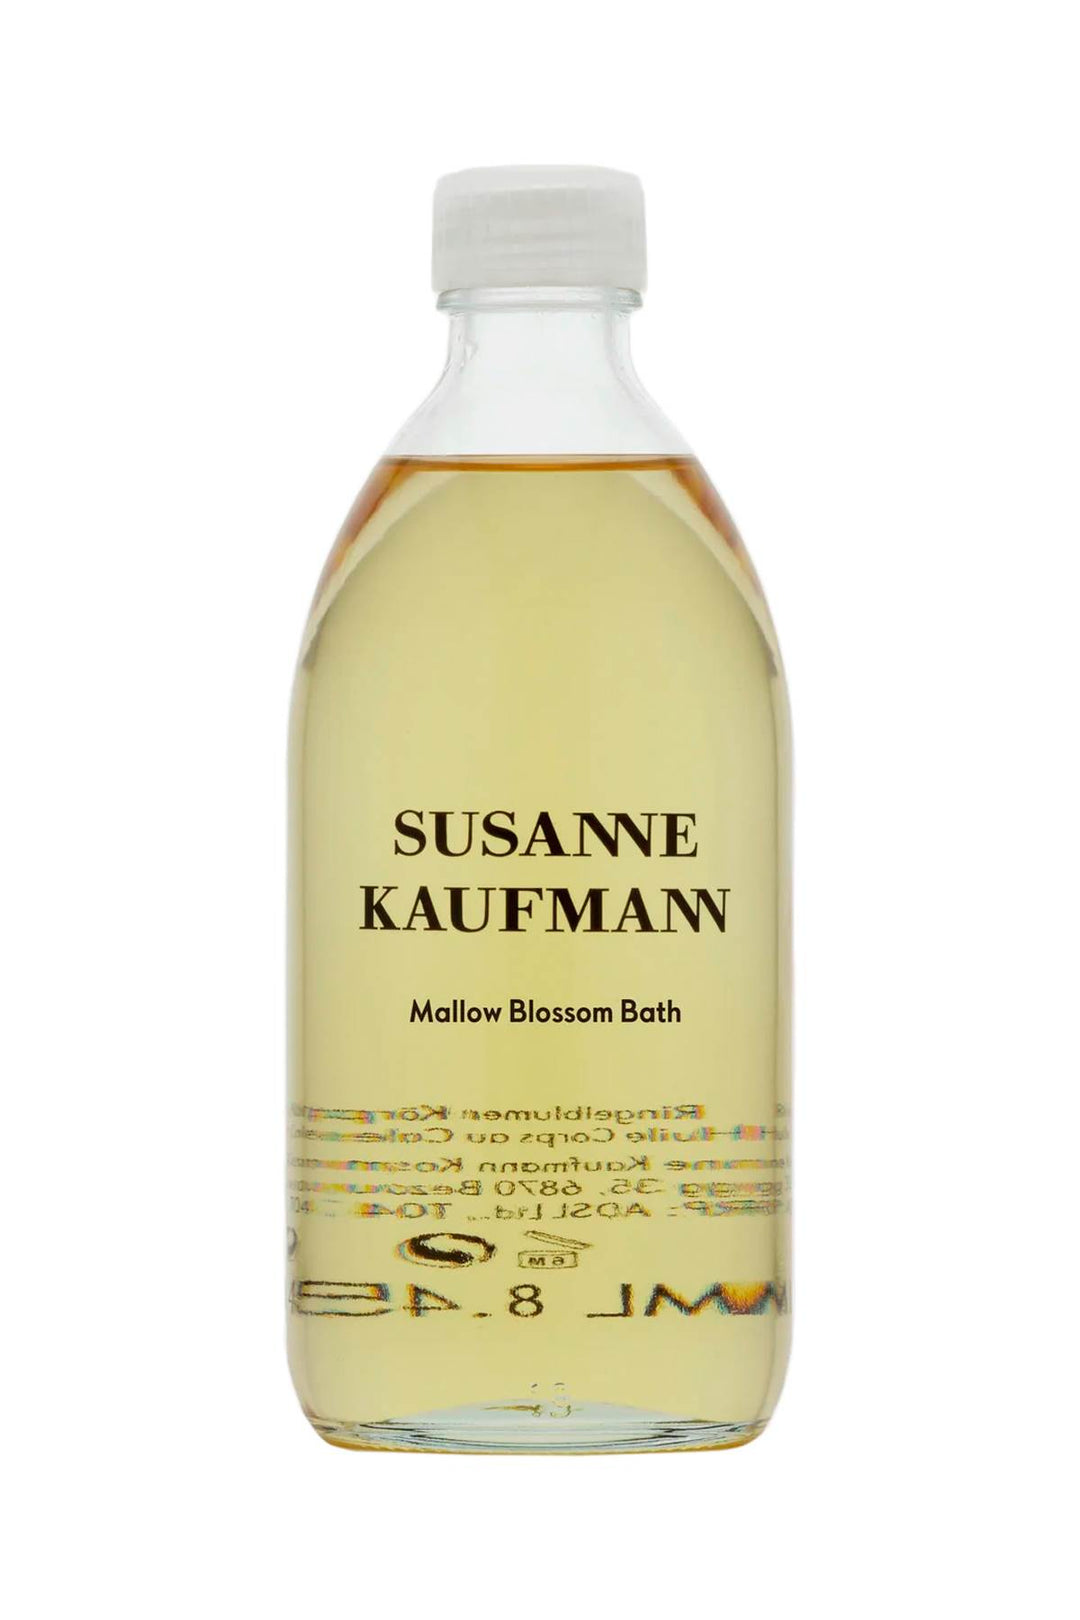 Susanne kaufmann mallow blossom bath - 250ml-0